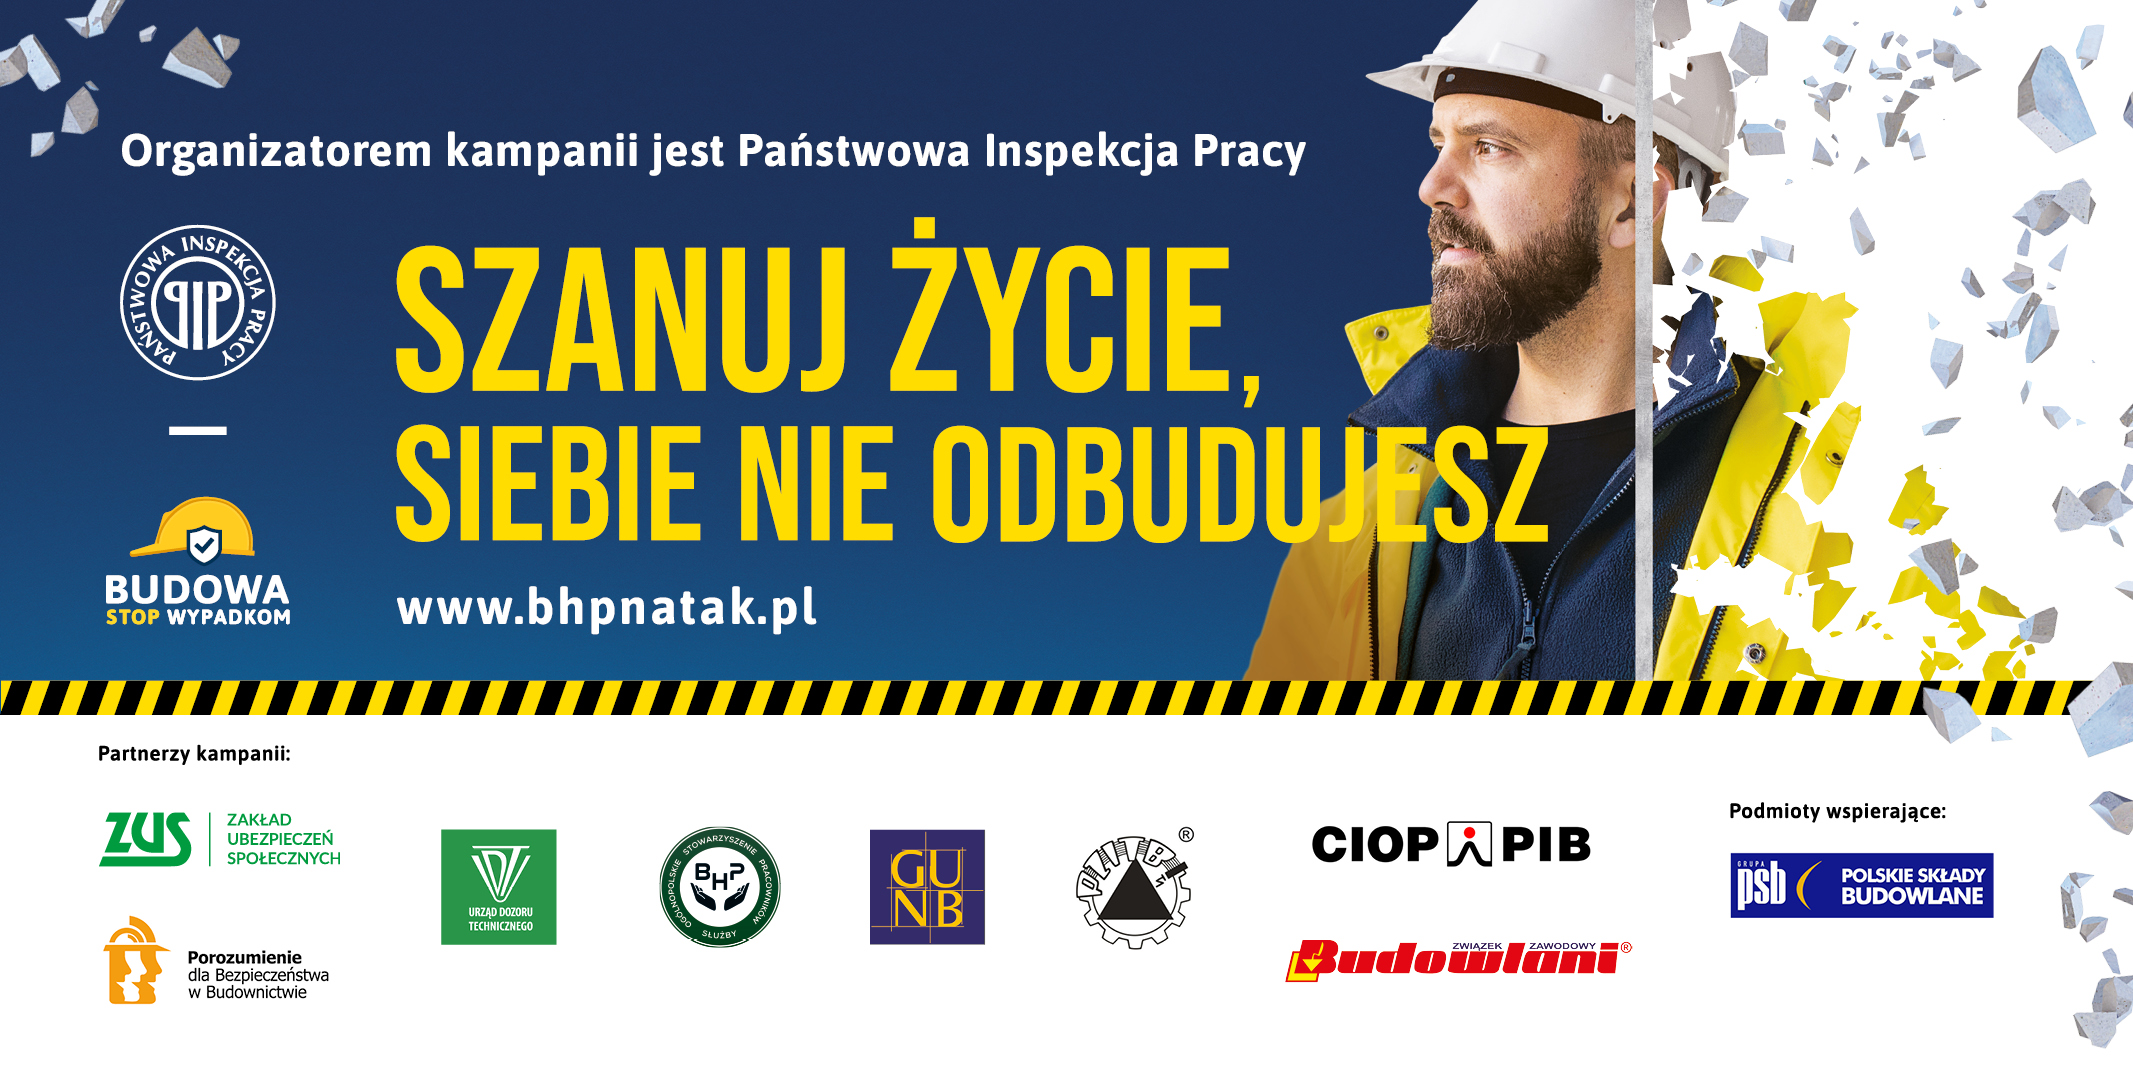 grafika kampanii PIP - budowa stop wypadkom, mężczyzna ubrany w żółty strój z kaskiem, w tle rozbite szkło